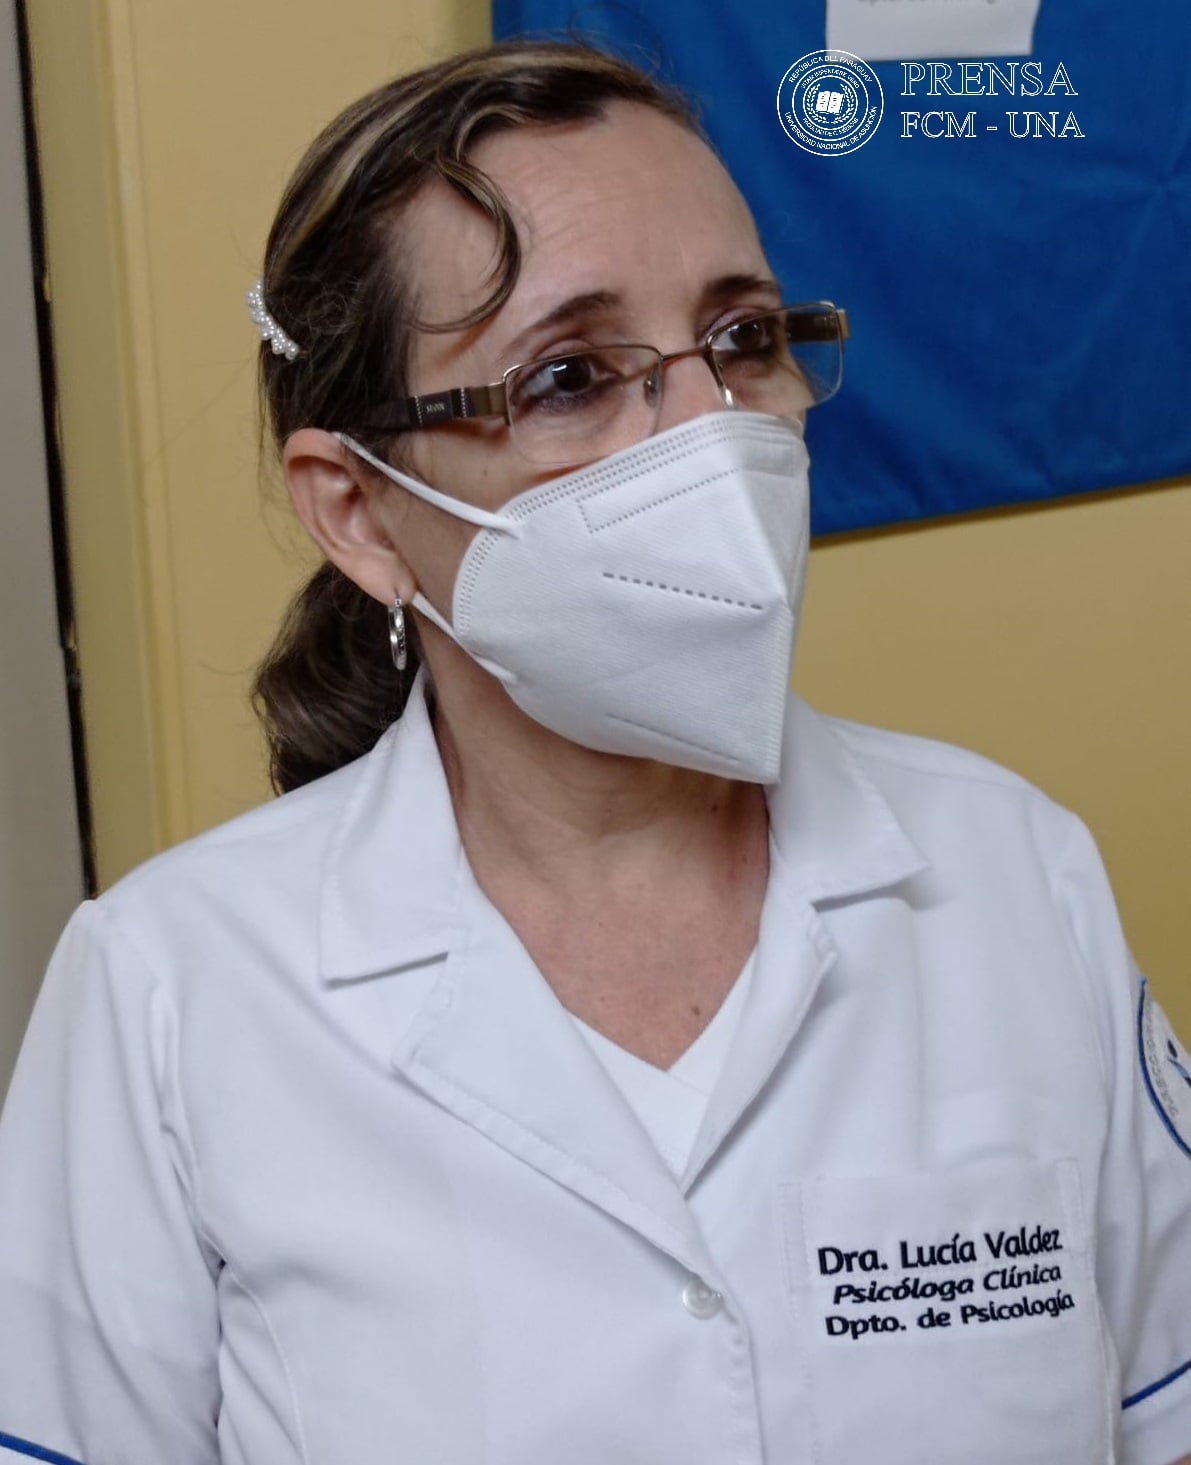 Dra. Lucía Valdez, jefa del Departamento de Psicología del Hospital de Clínicas FCM-UNA